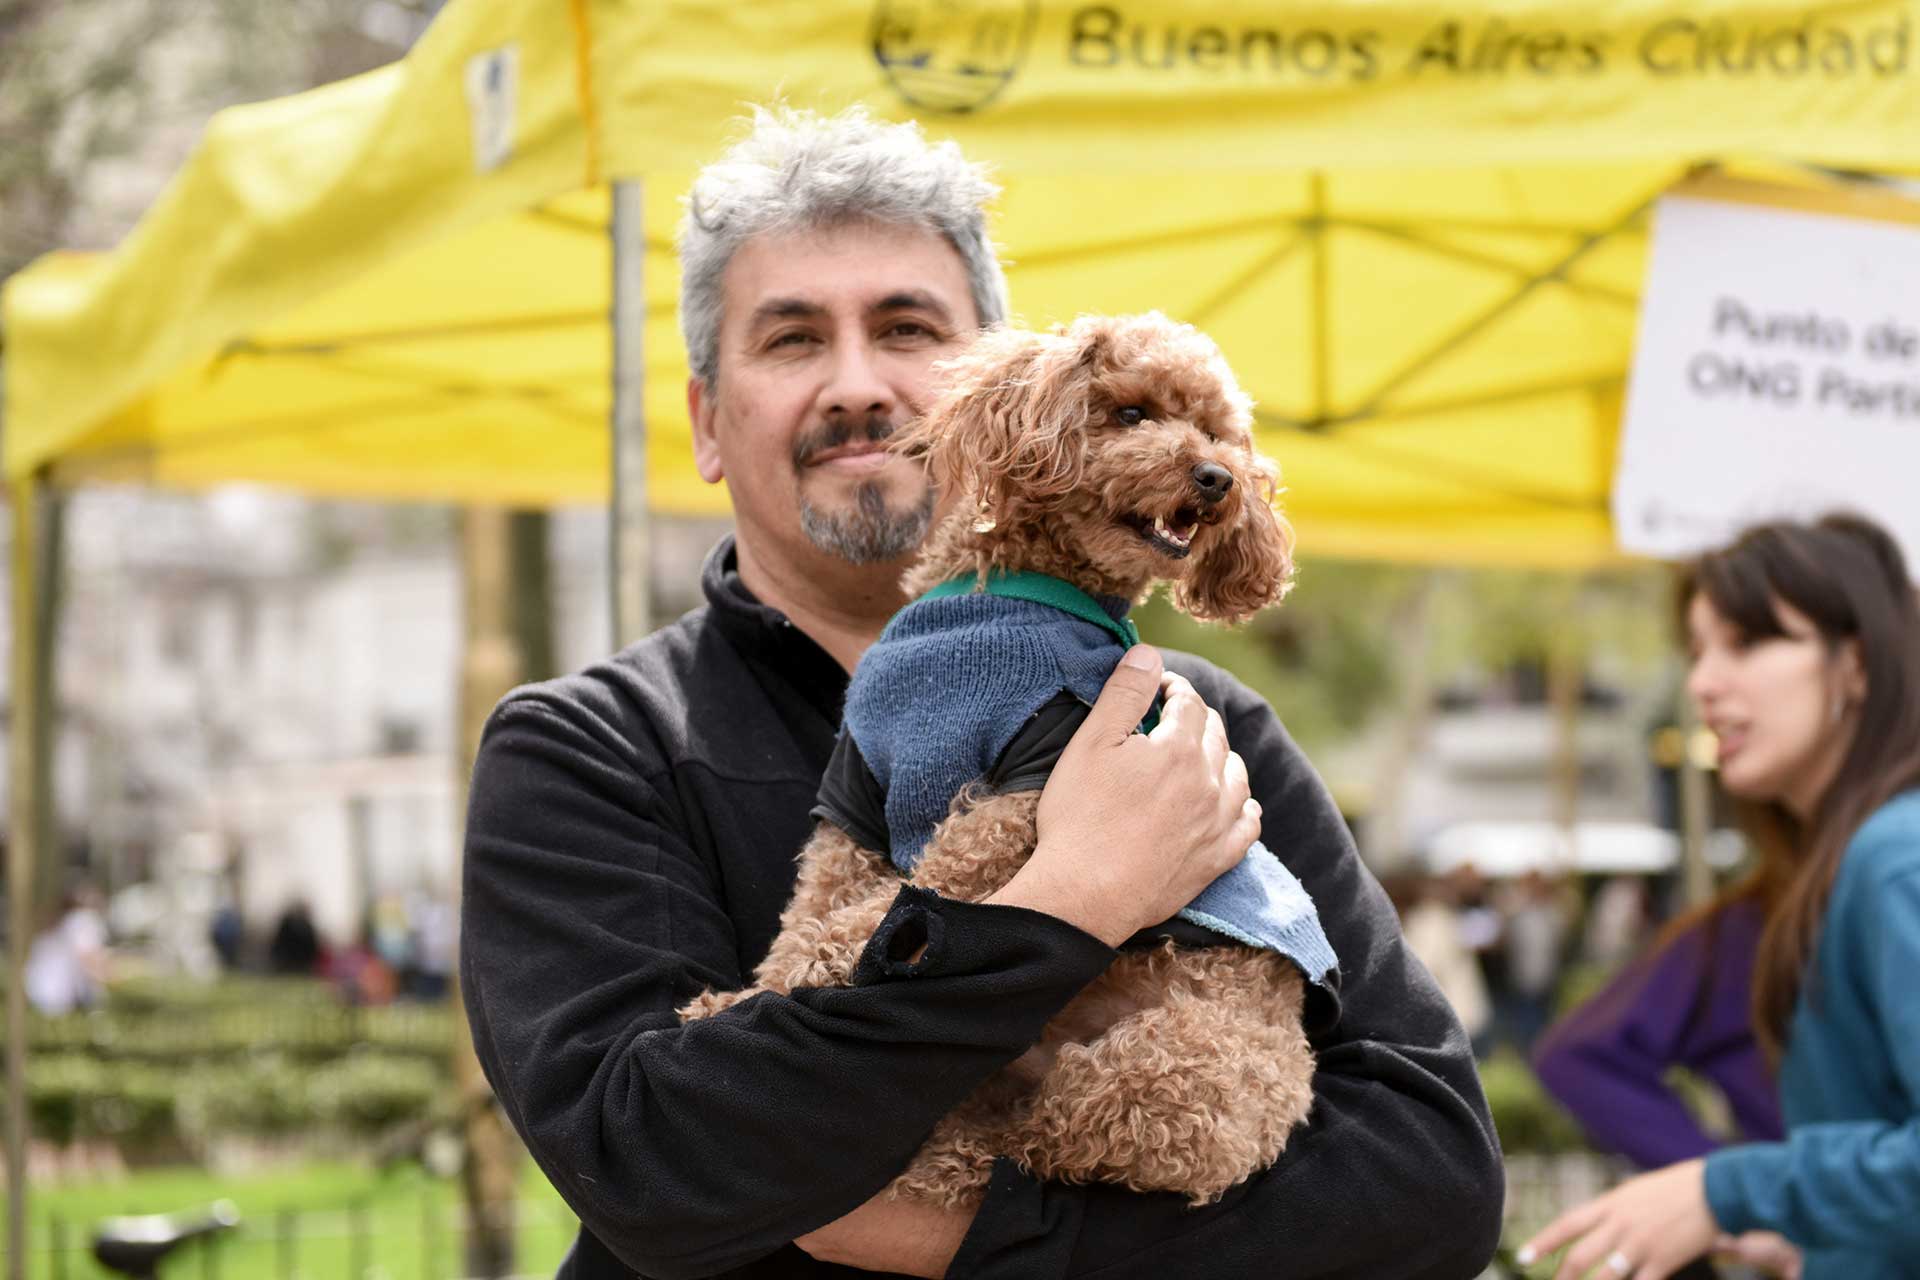 Retrato fotográfico de un hombre con su perro en brazos, la mascota viste un pullover gris oscuro. Cobertura del evento 'Mascotas de la Ciudad', organizado por el Gobierno de la Ciudad Autónoma de Buenos Aires